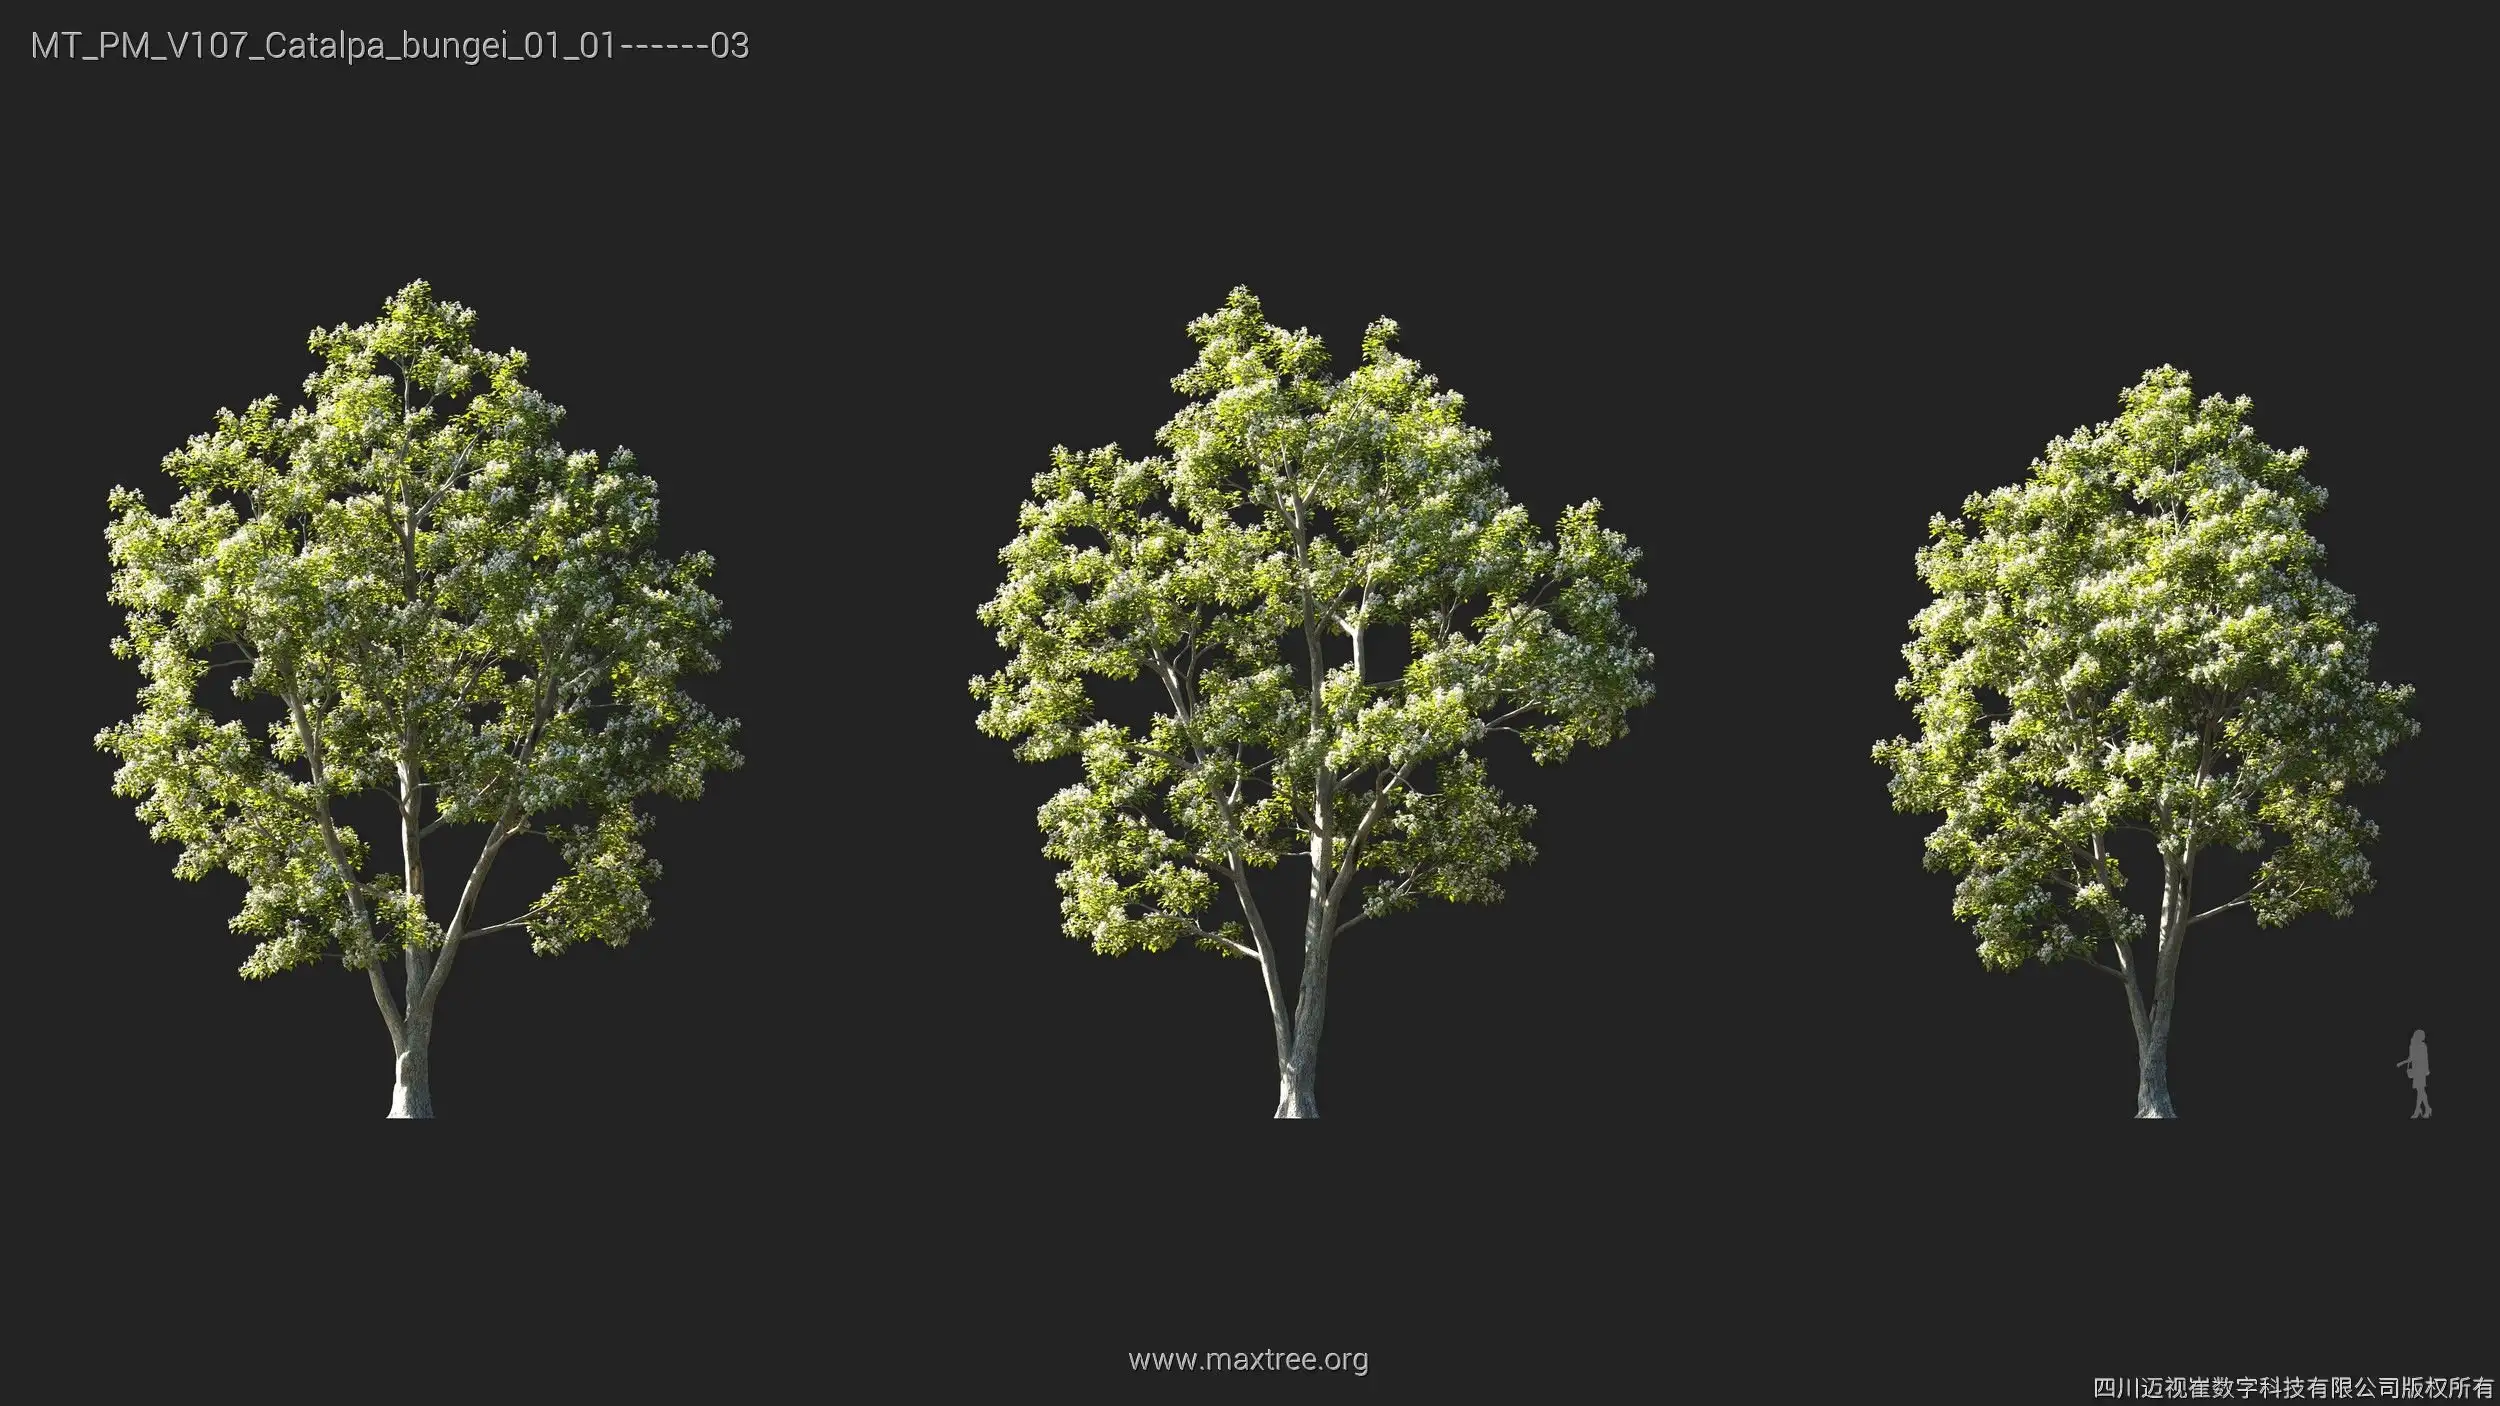 دانلود 72 مدل سه بعدی درخت - 6